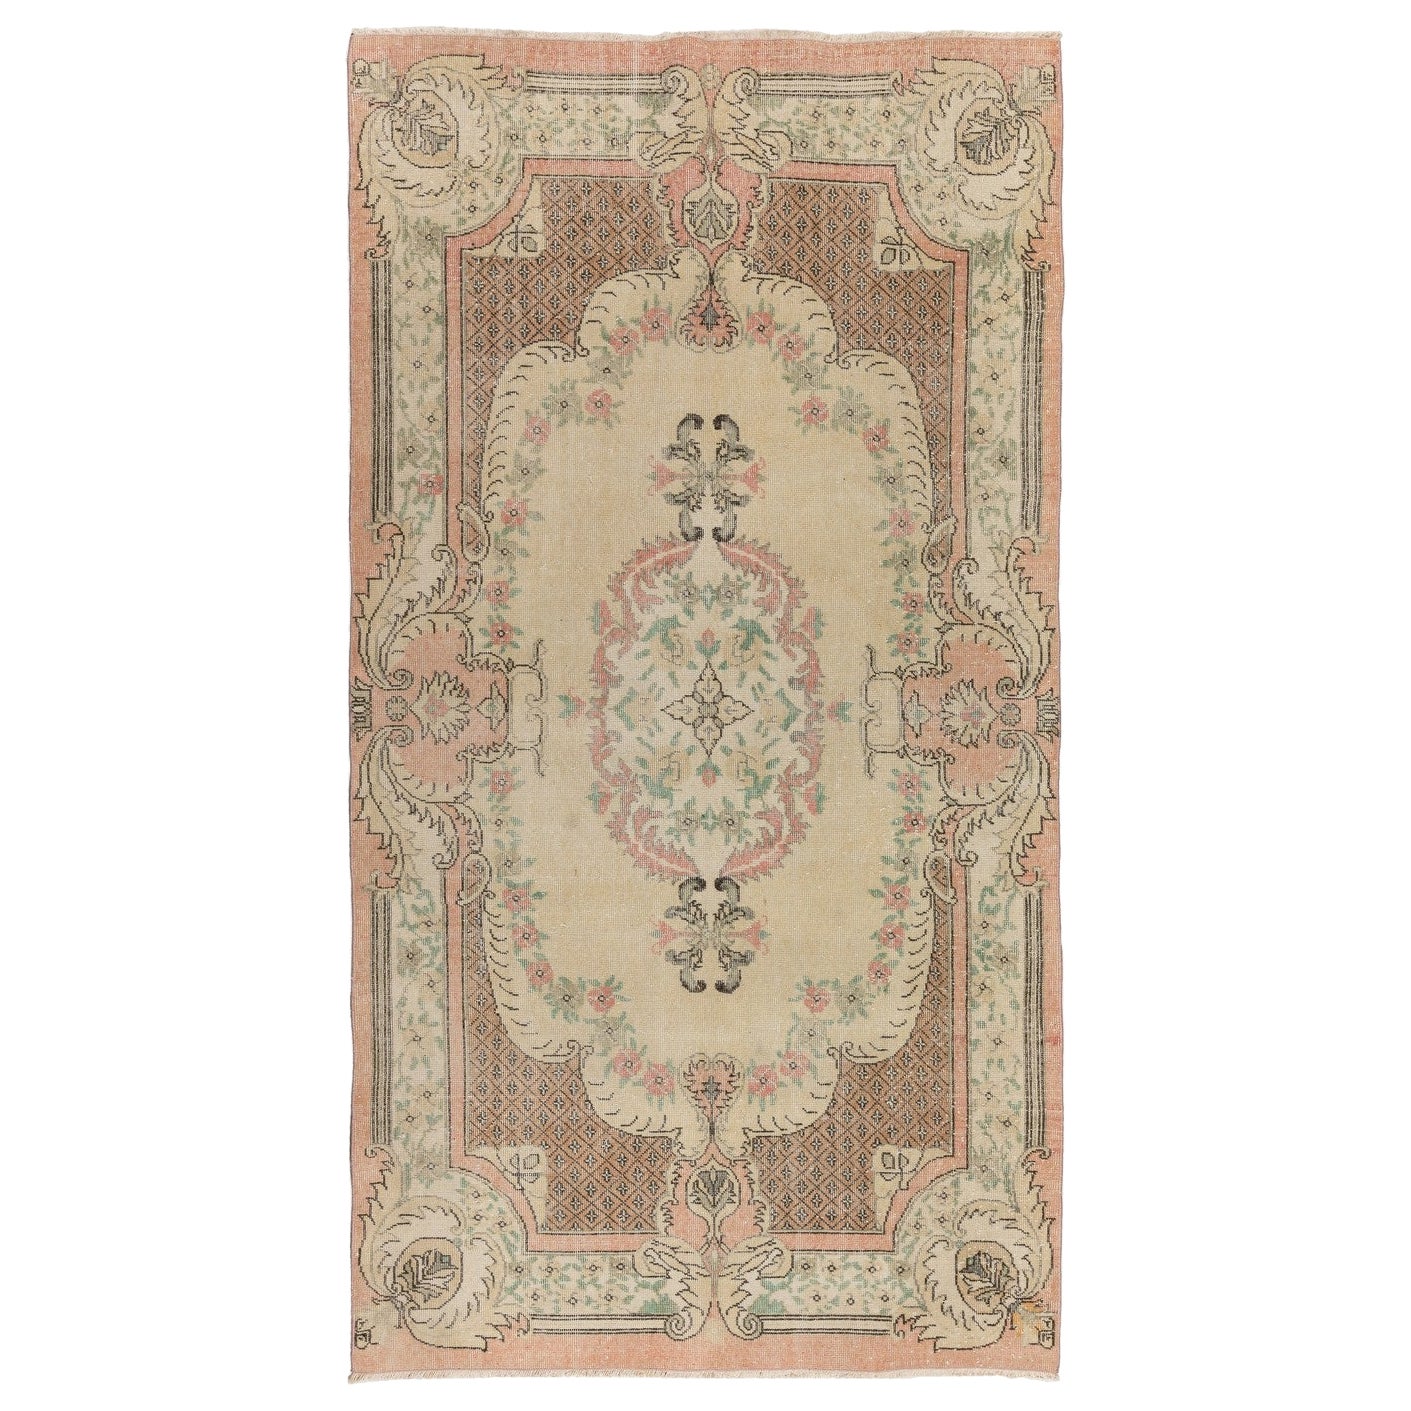 5.6x9.7 Ft Aubusson inspirierter türkischer Vintage-Teppich in Pfirsich & Blassgelb